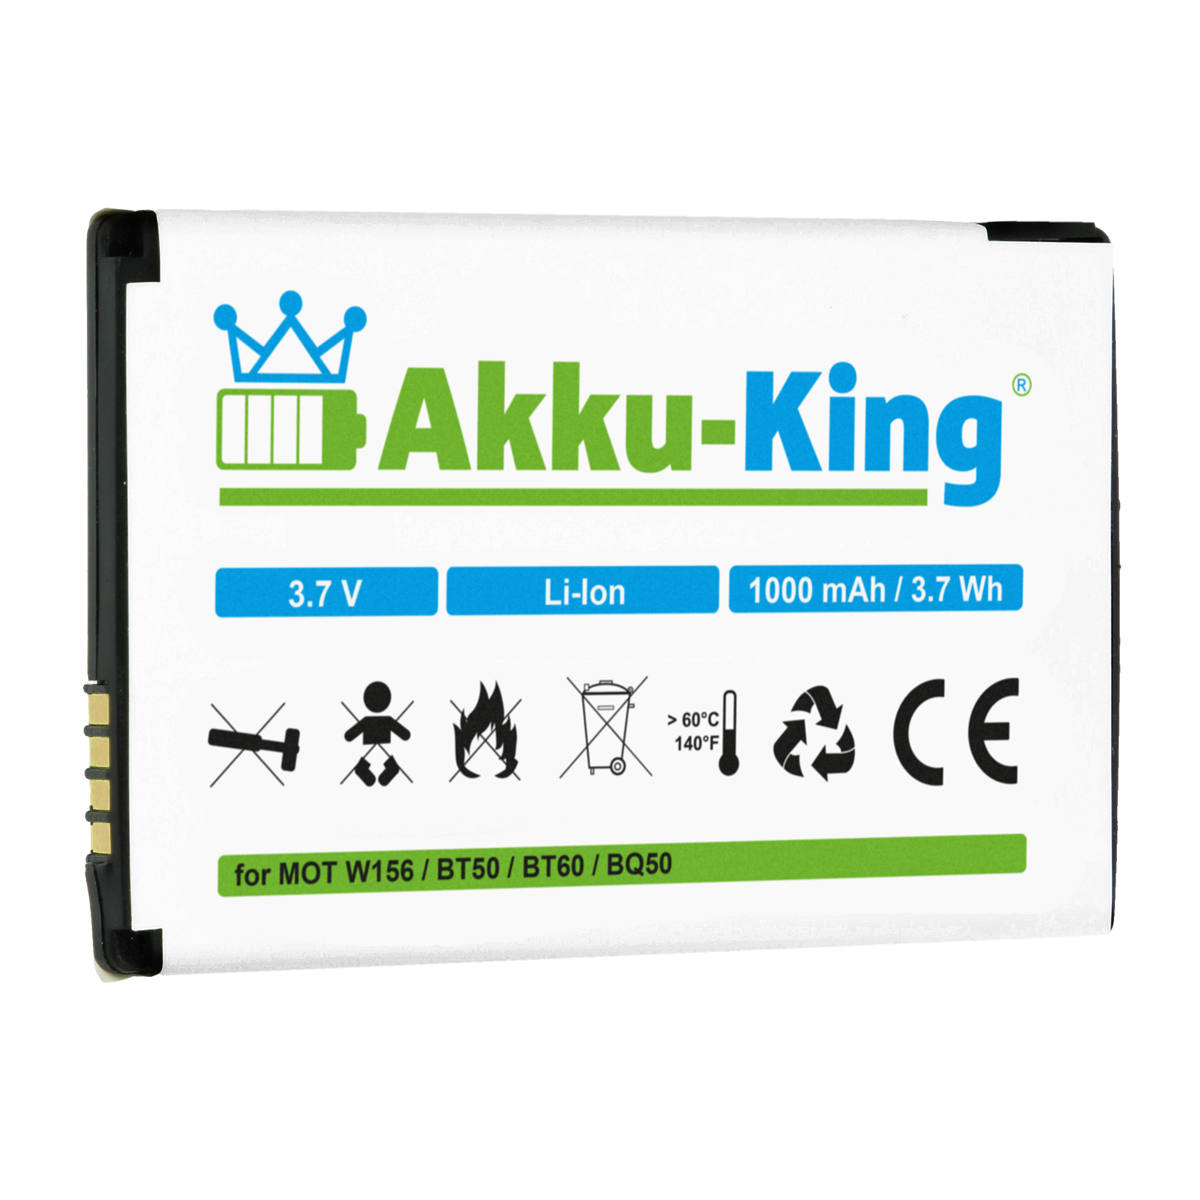 AKKU-KING Volt, 1000mAh BT50 mit 3.7 Akku Handy-Akku, Motorola Li-Ion kompatibel